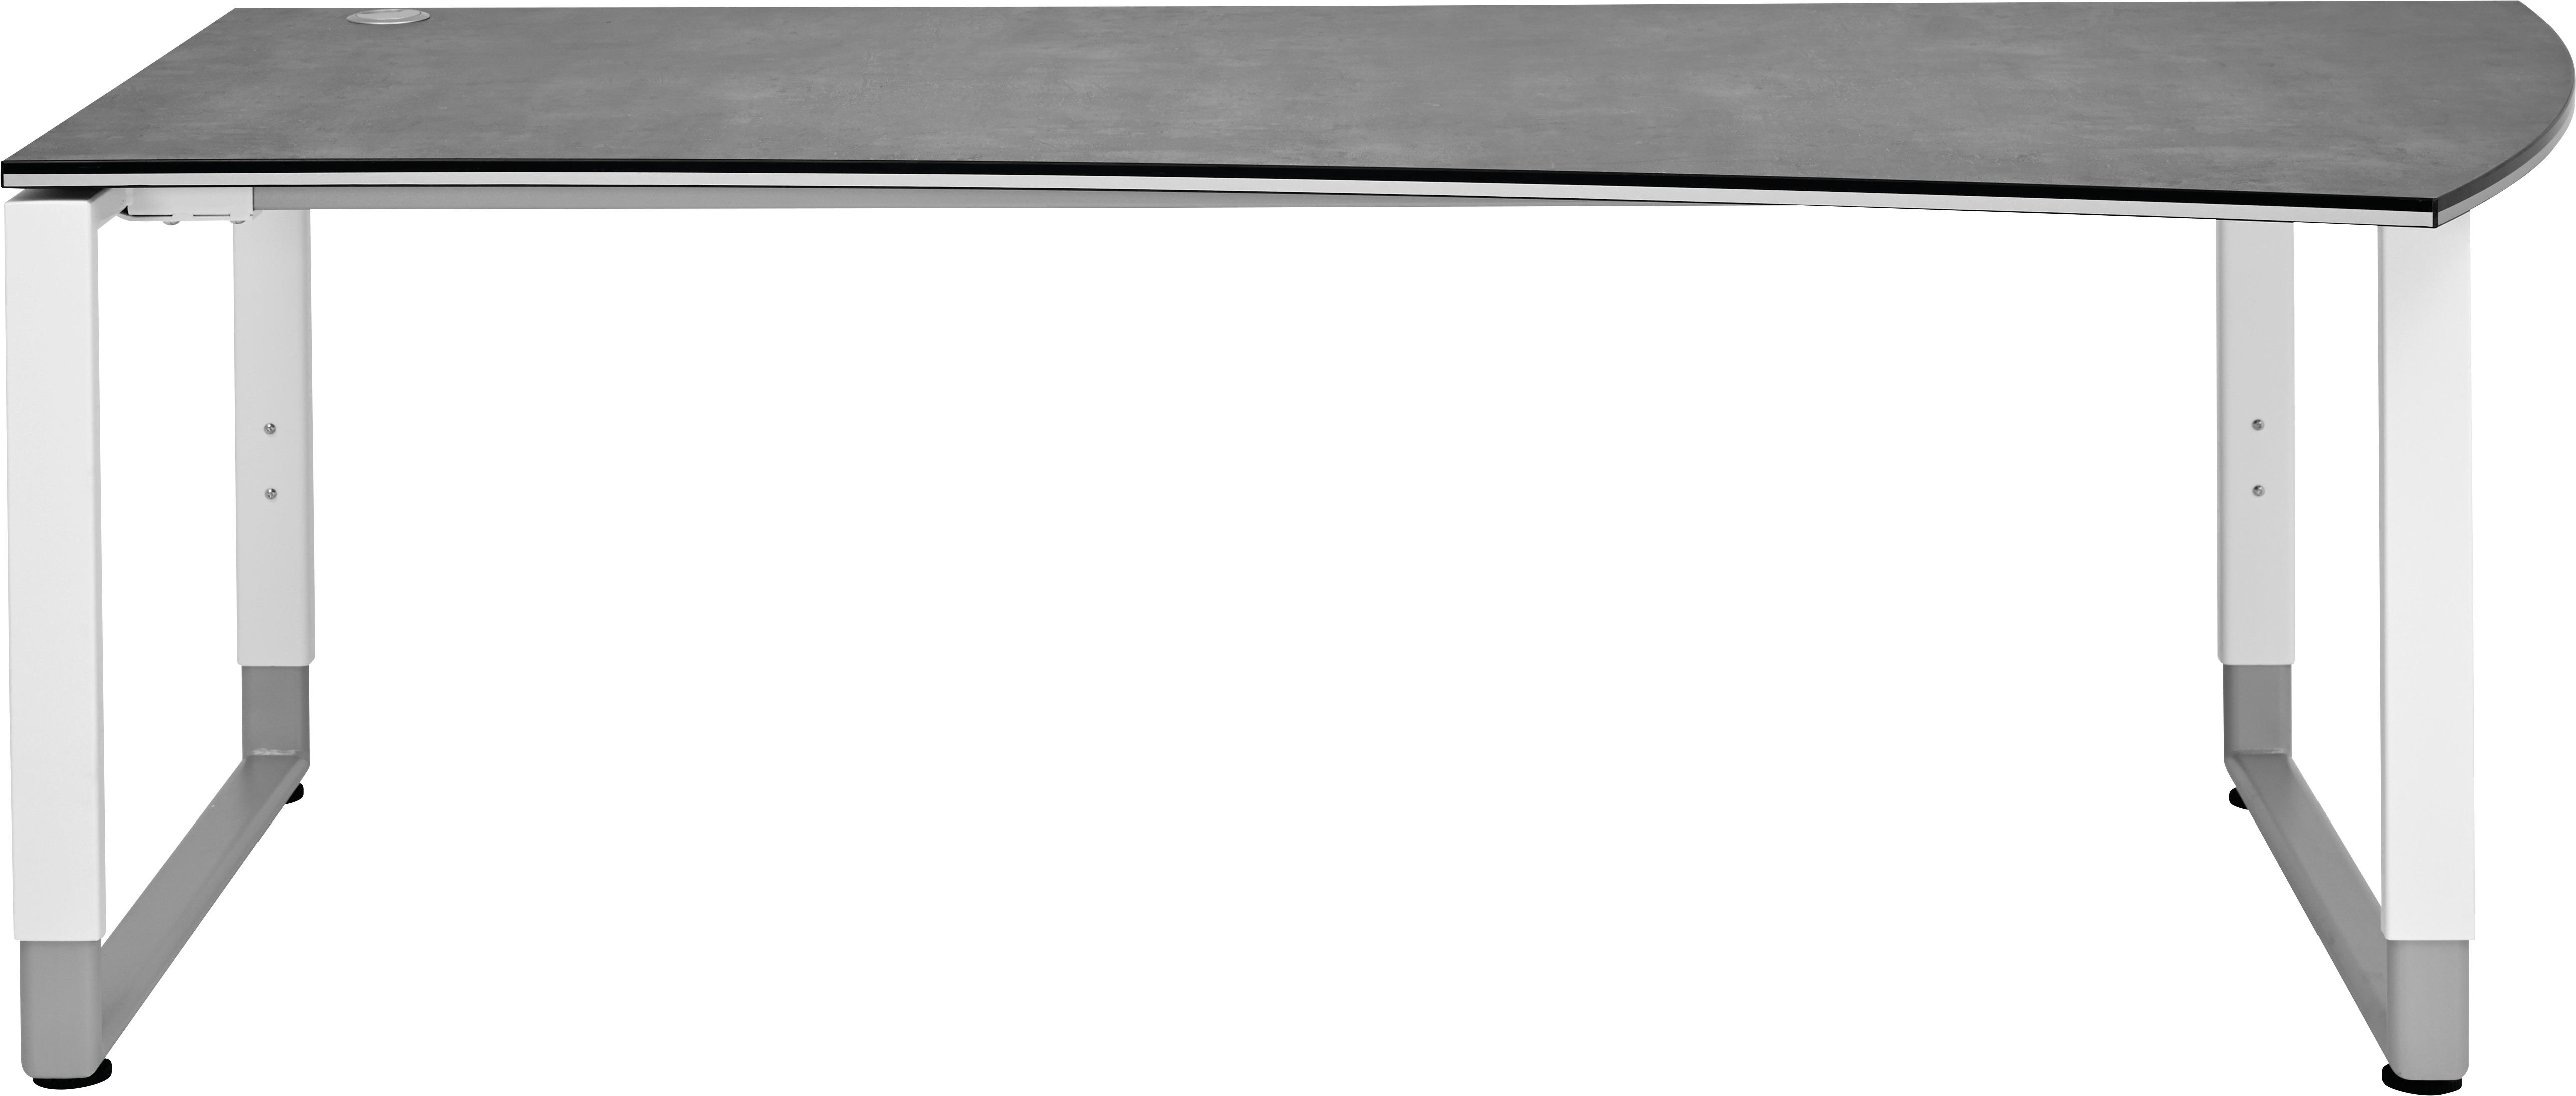 SCHREIBTISCH Grau, Weiß  - Weiß/Grau, Basics, Metall (200/80-100/68-82cm) - Moderano